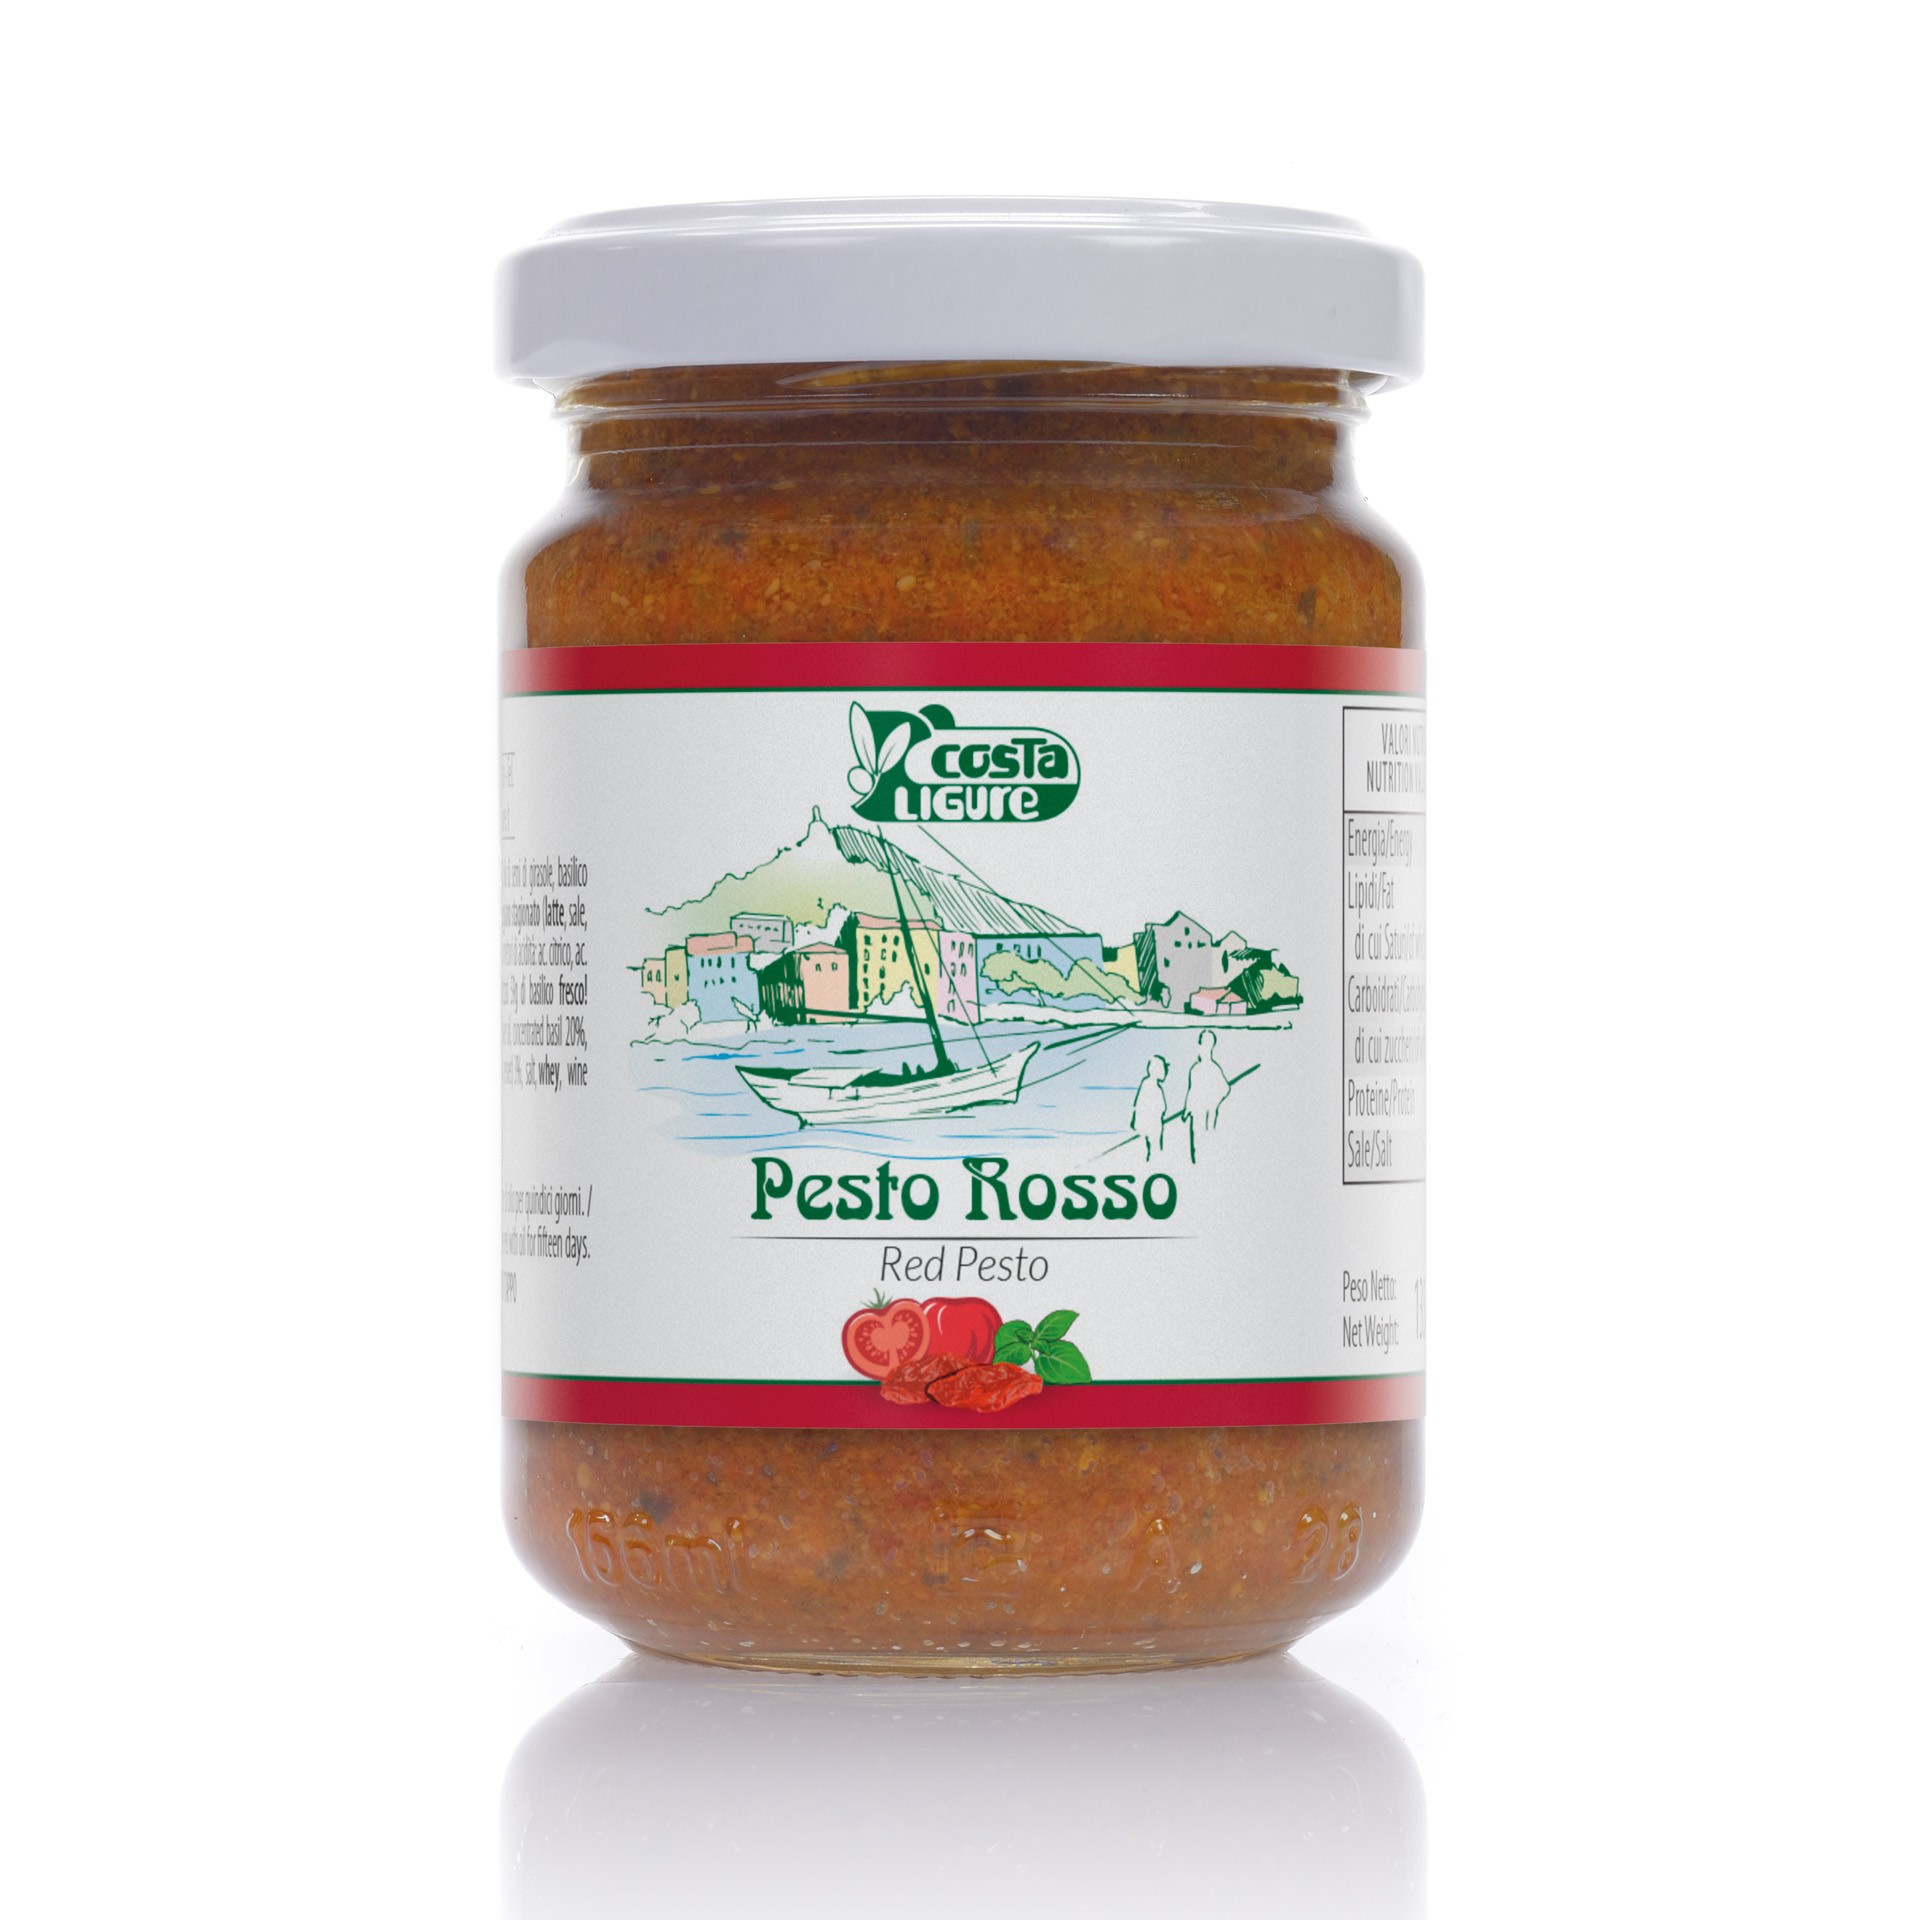 Costa Ligure – Pesto Rosso 135 g